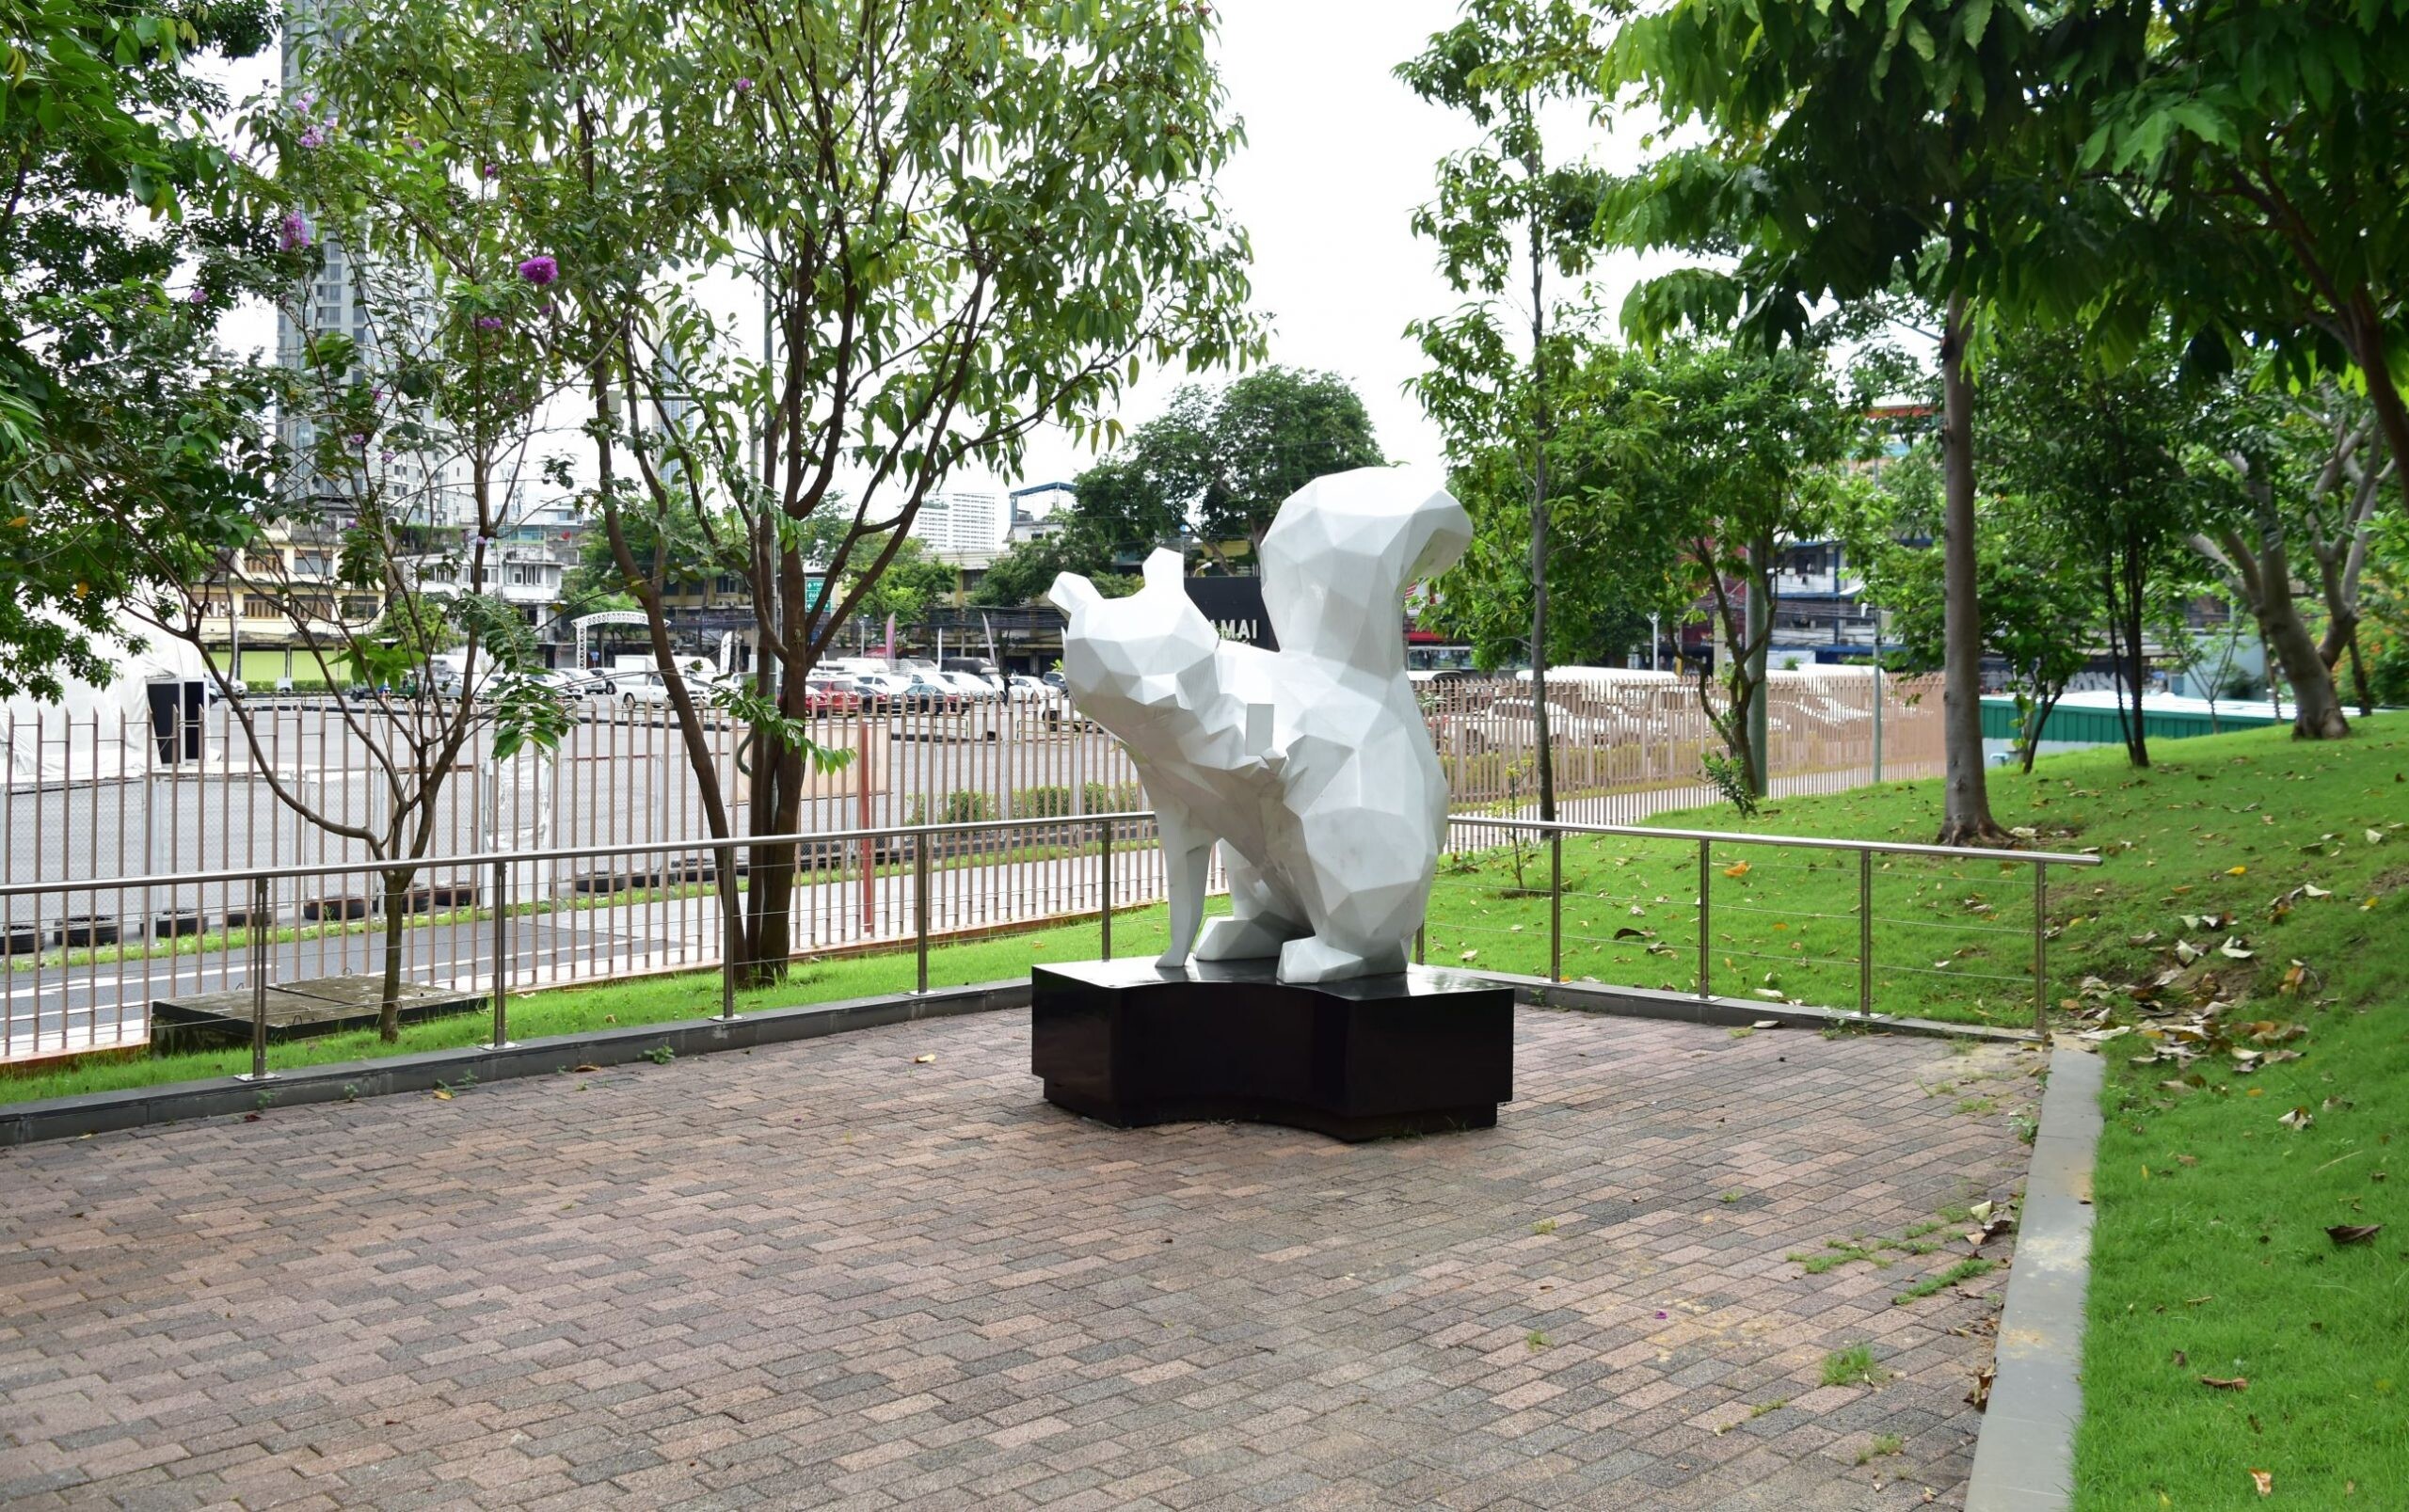 จุฬาฯ เปิดตัวอุทยานศิลปะ "สวนศิลป์จุฬาฯ" (CHULA ART PARK) แลนด์มาร์กท่องเที่ยวเชิงศิลปกรรมแห่งใหม่ใจกลางเมือง